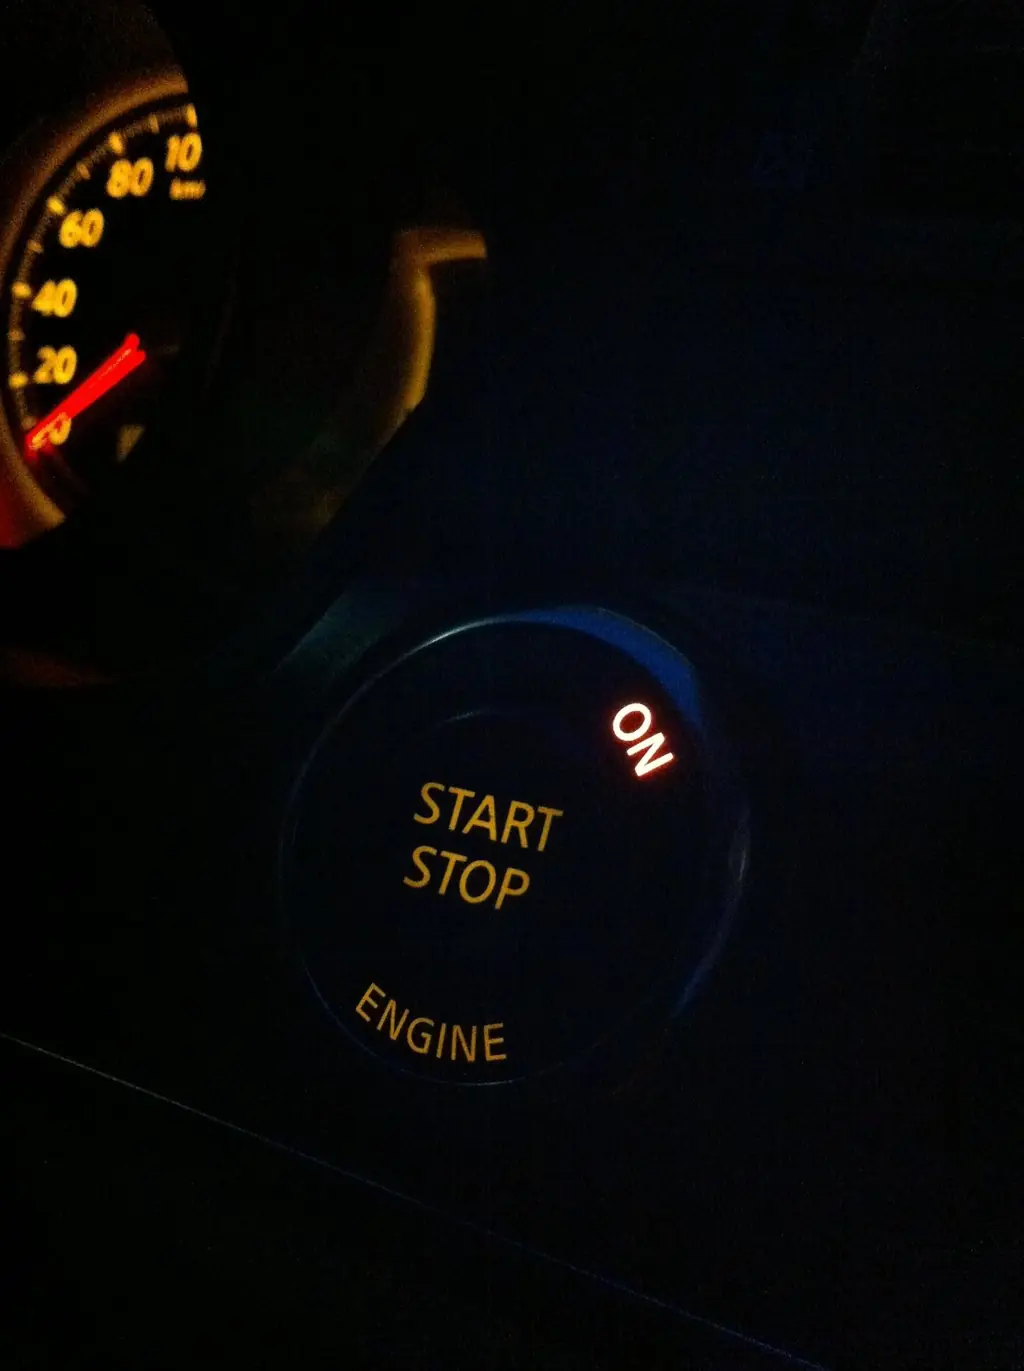 Кнопка START/STOP, ставшая уже традиционной у большинства современных автомобилей.